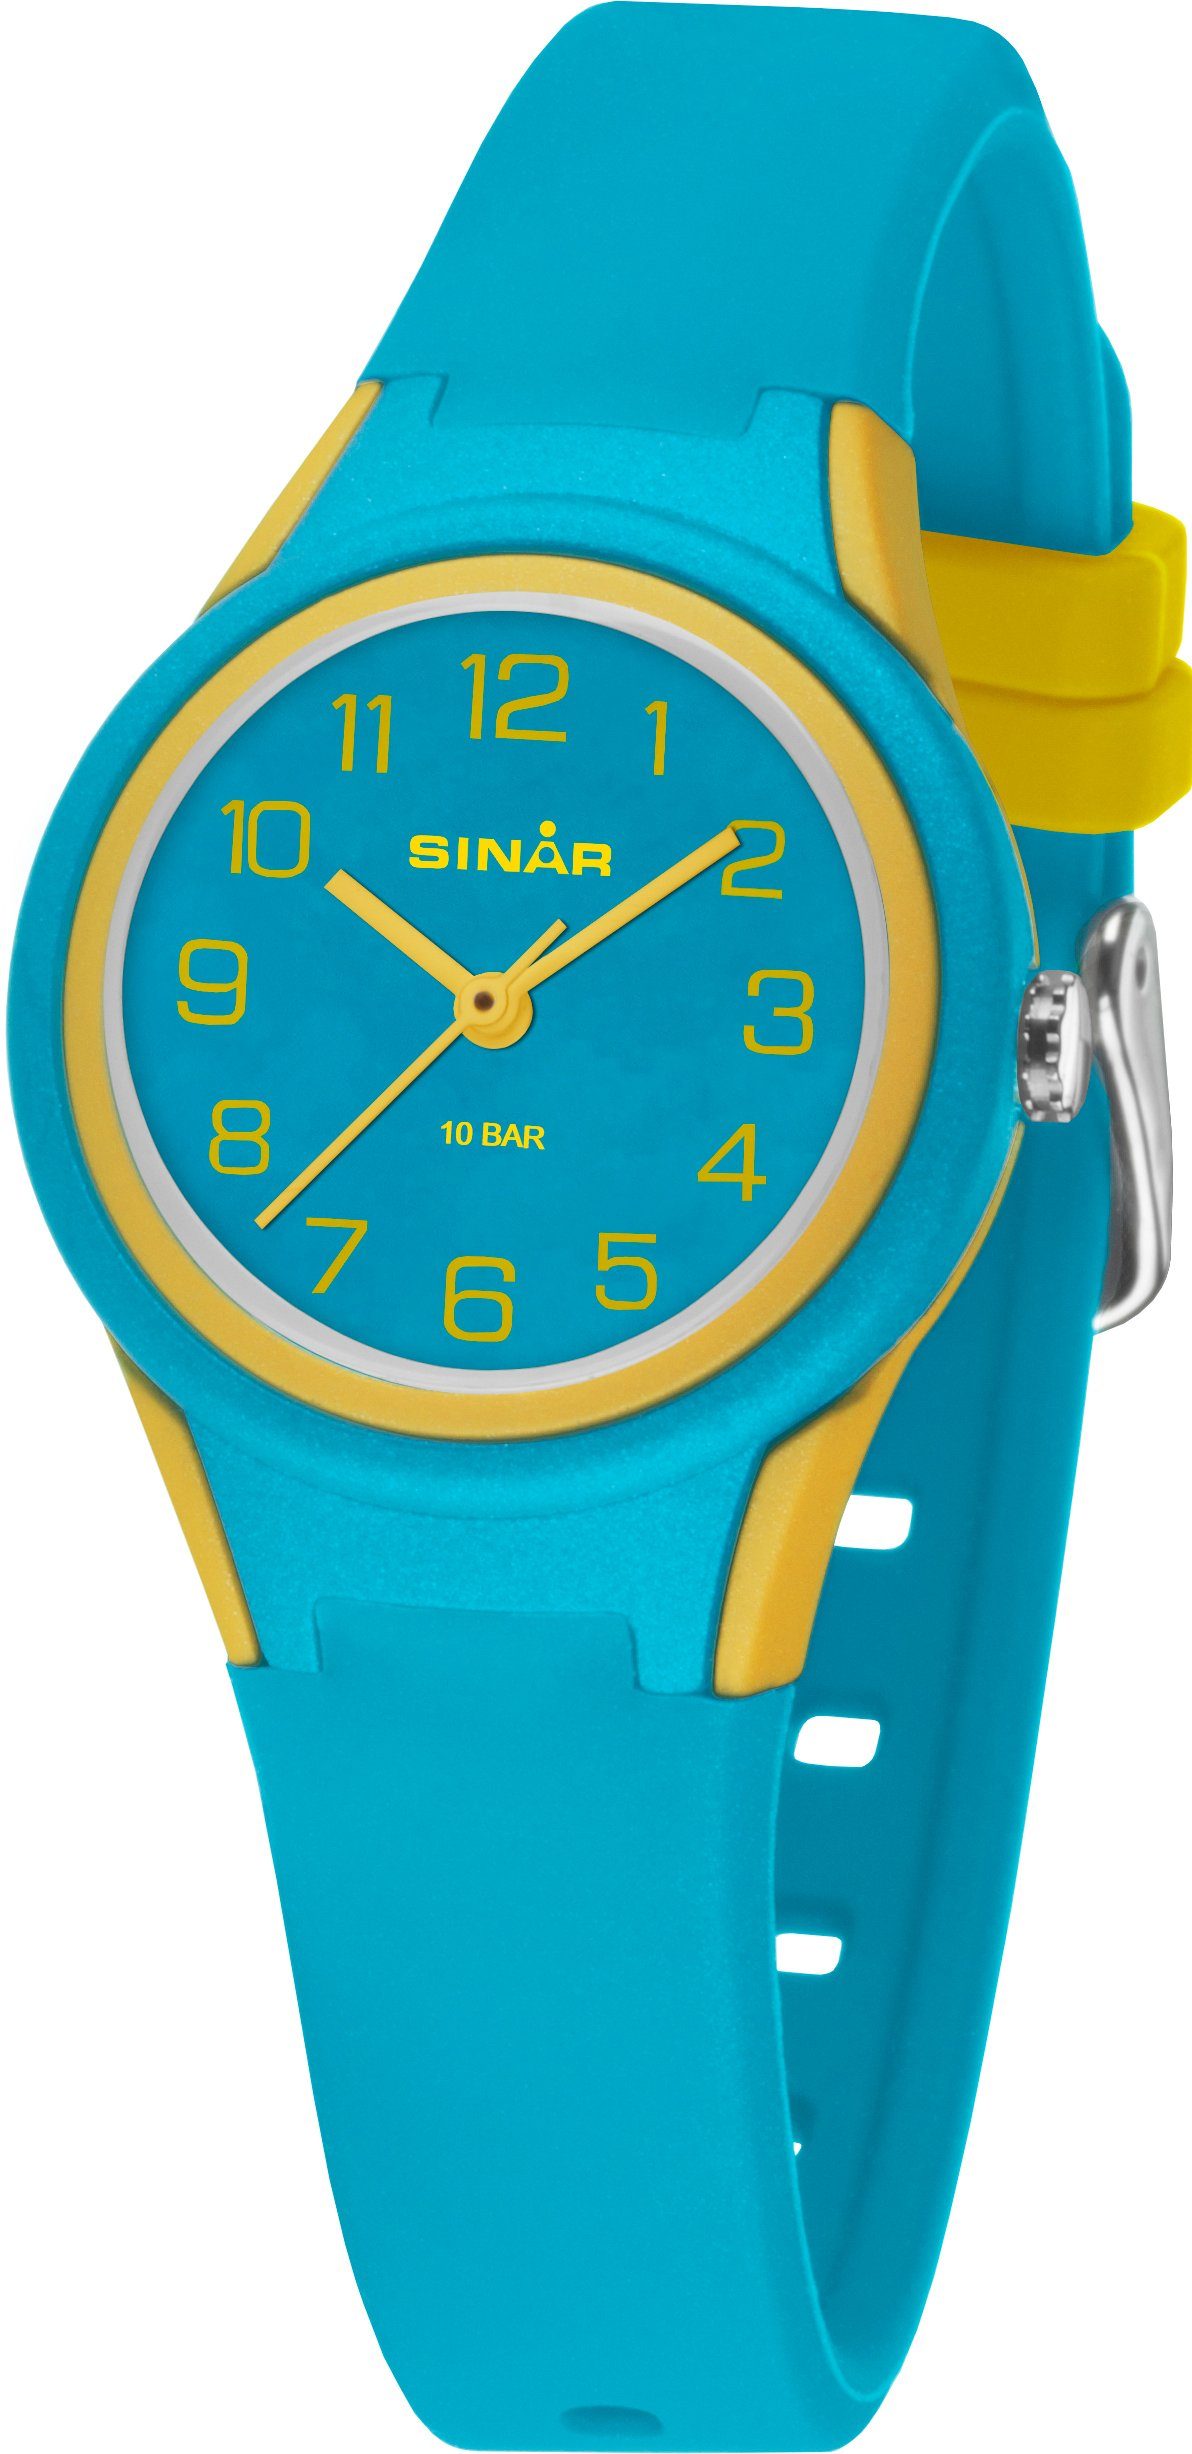 SINAR Quarzuhr XB-47-2, Armbanduhr, Kinderuhr, Mädchenuhr, ideal auch als Geschenk